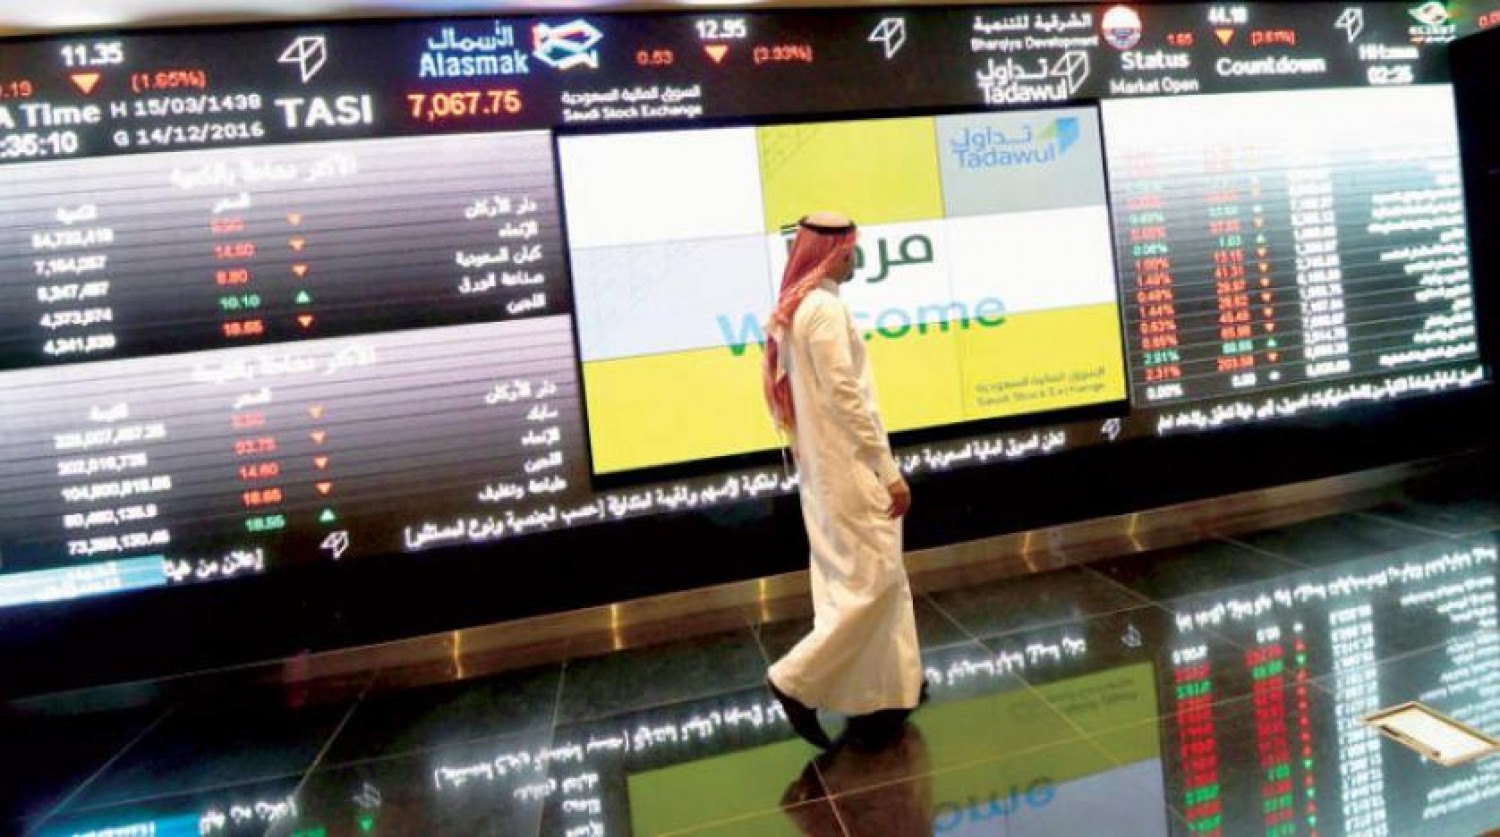 شركة أملاك تعلن النطاق السعري لأول اكتتاب بالسعودية منذ أزمة كورونا